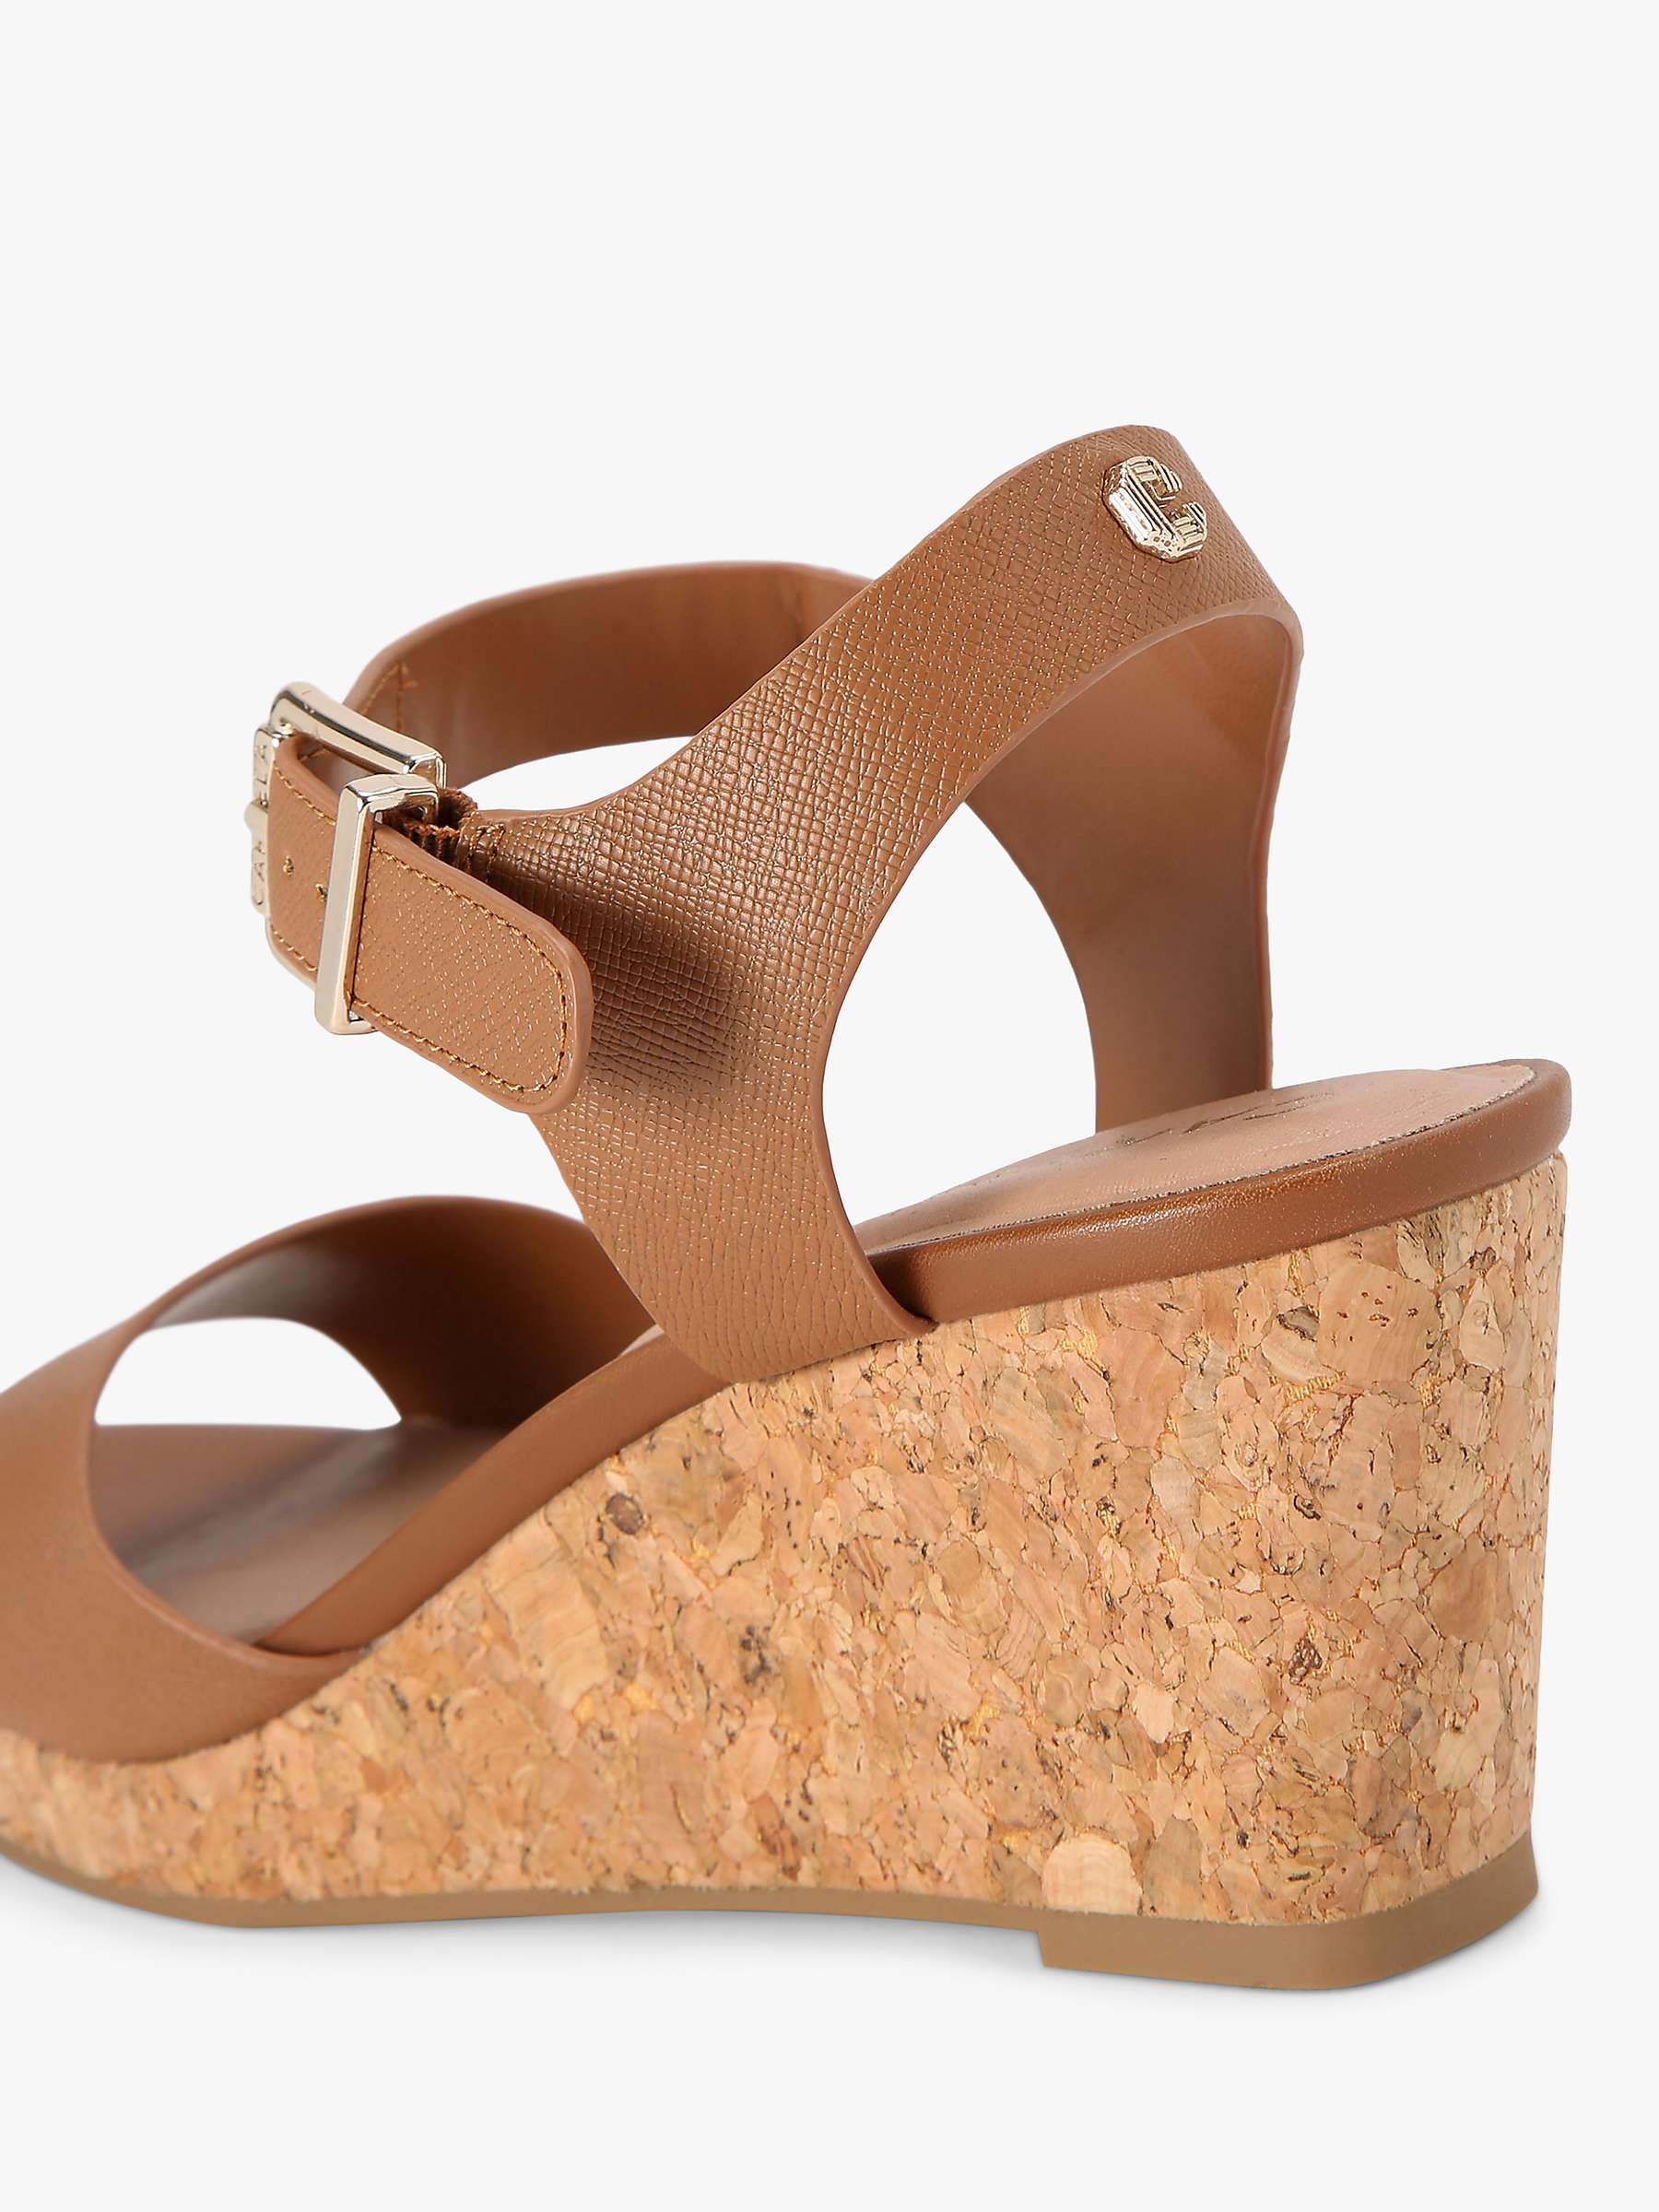 Buy Carvela Sadie Wedge Heel Sandals, Tan Online at johnlewis.com